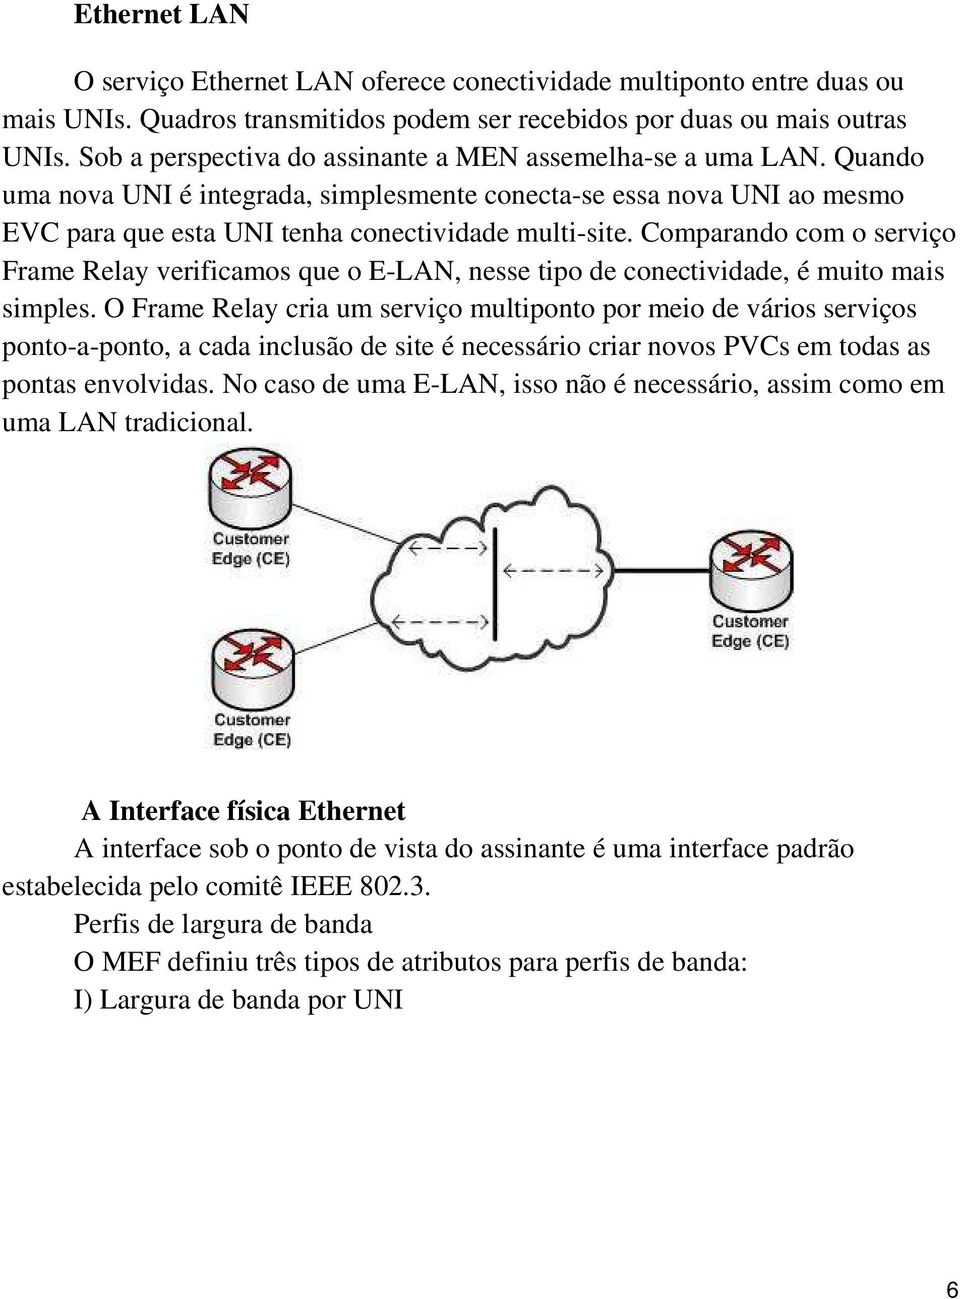 Comparando com o serviço Frame Relay verificamos que o E-LAN, nesse tipo de conectividade, é muito mais simples.